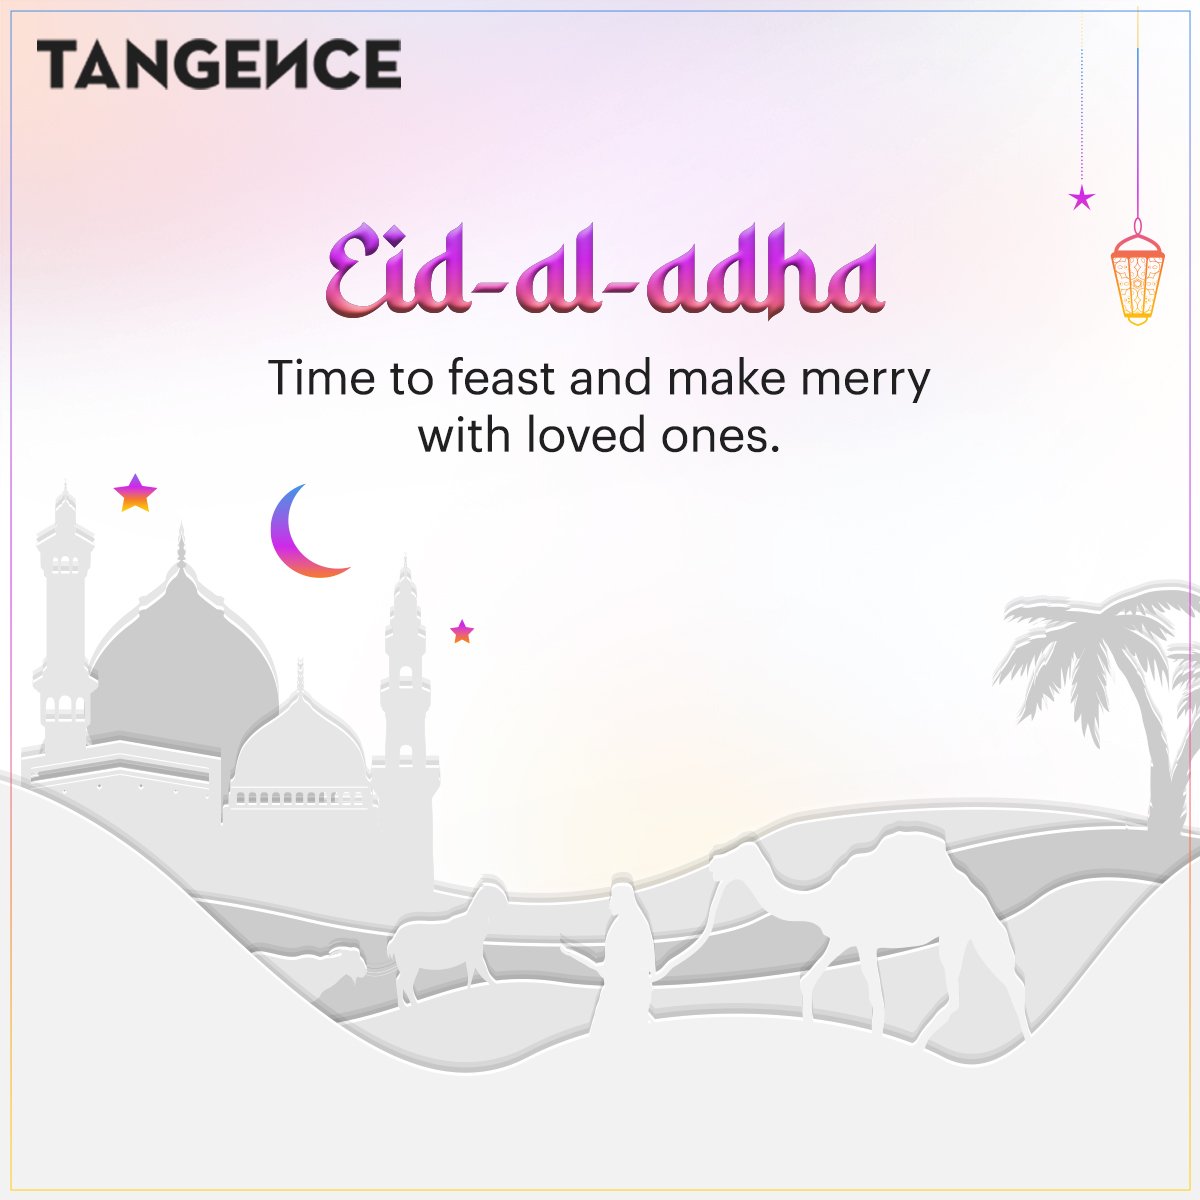 Eid Mubarak! Embracing the spirit of togetherness and gratitude 🌙✨

#EidCelebrations #SheerKhurmaLove #SweetEid #EidDesserts #EidTreats #Festival #EidWishes #JoyousEid #EidAlAdha #MomentMarketing #Marketing #Tangence #TangenceIndia